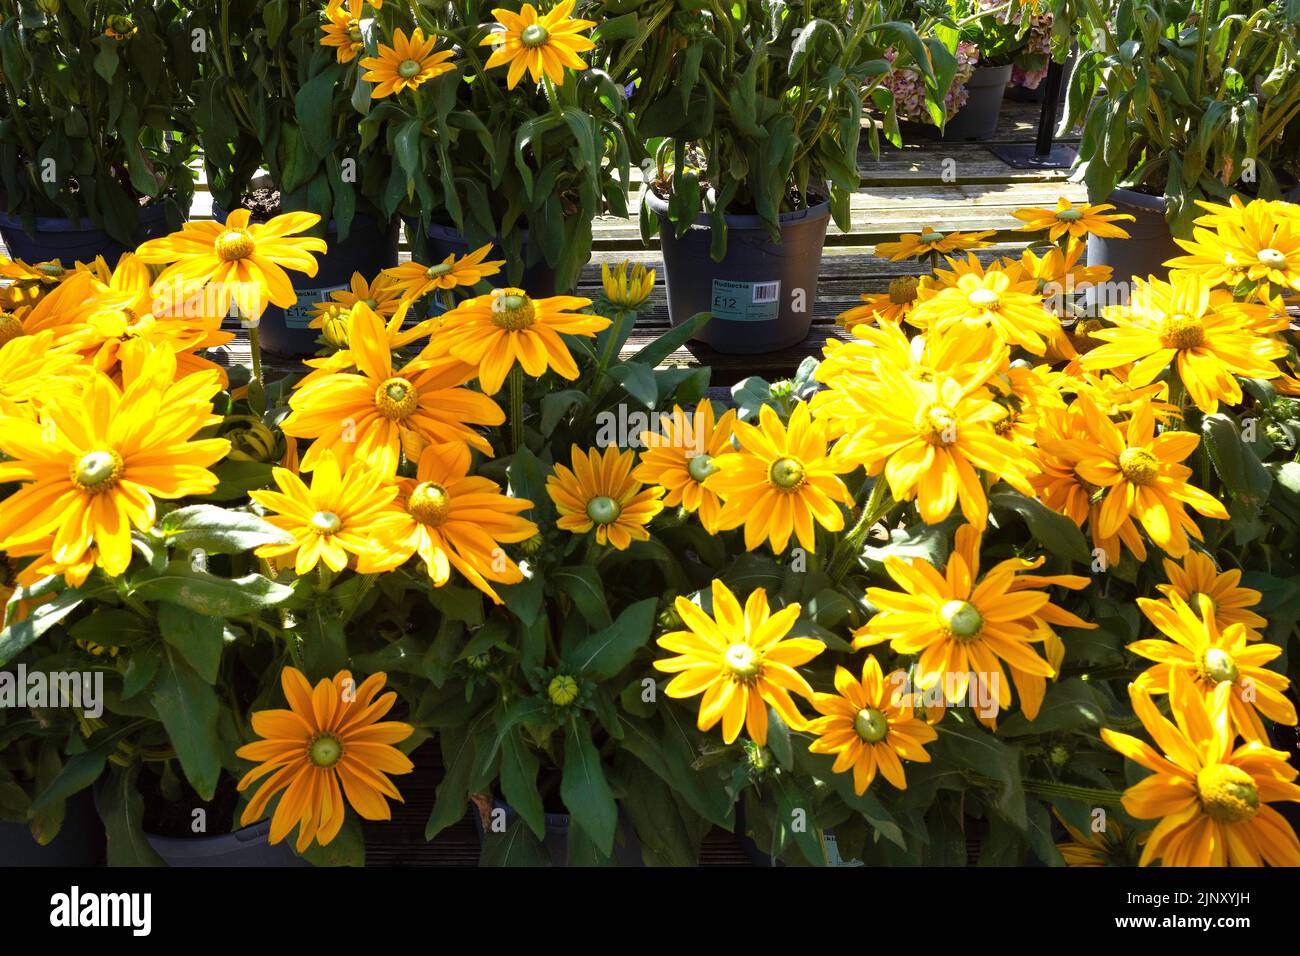 Flores de Rudbeckia Sunbeckia de color amarillo brillante, una flor perenne de jardín Foto de stock